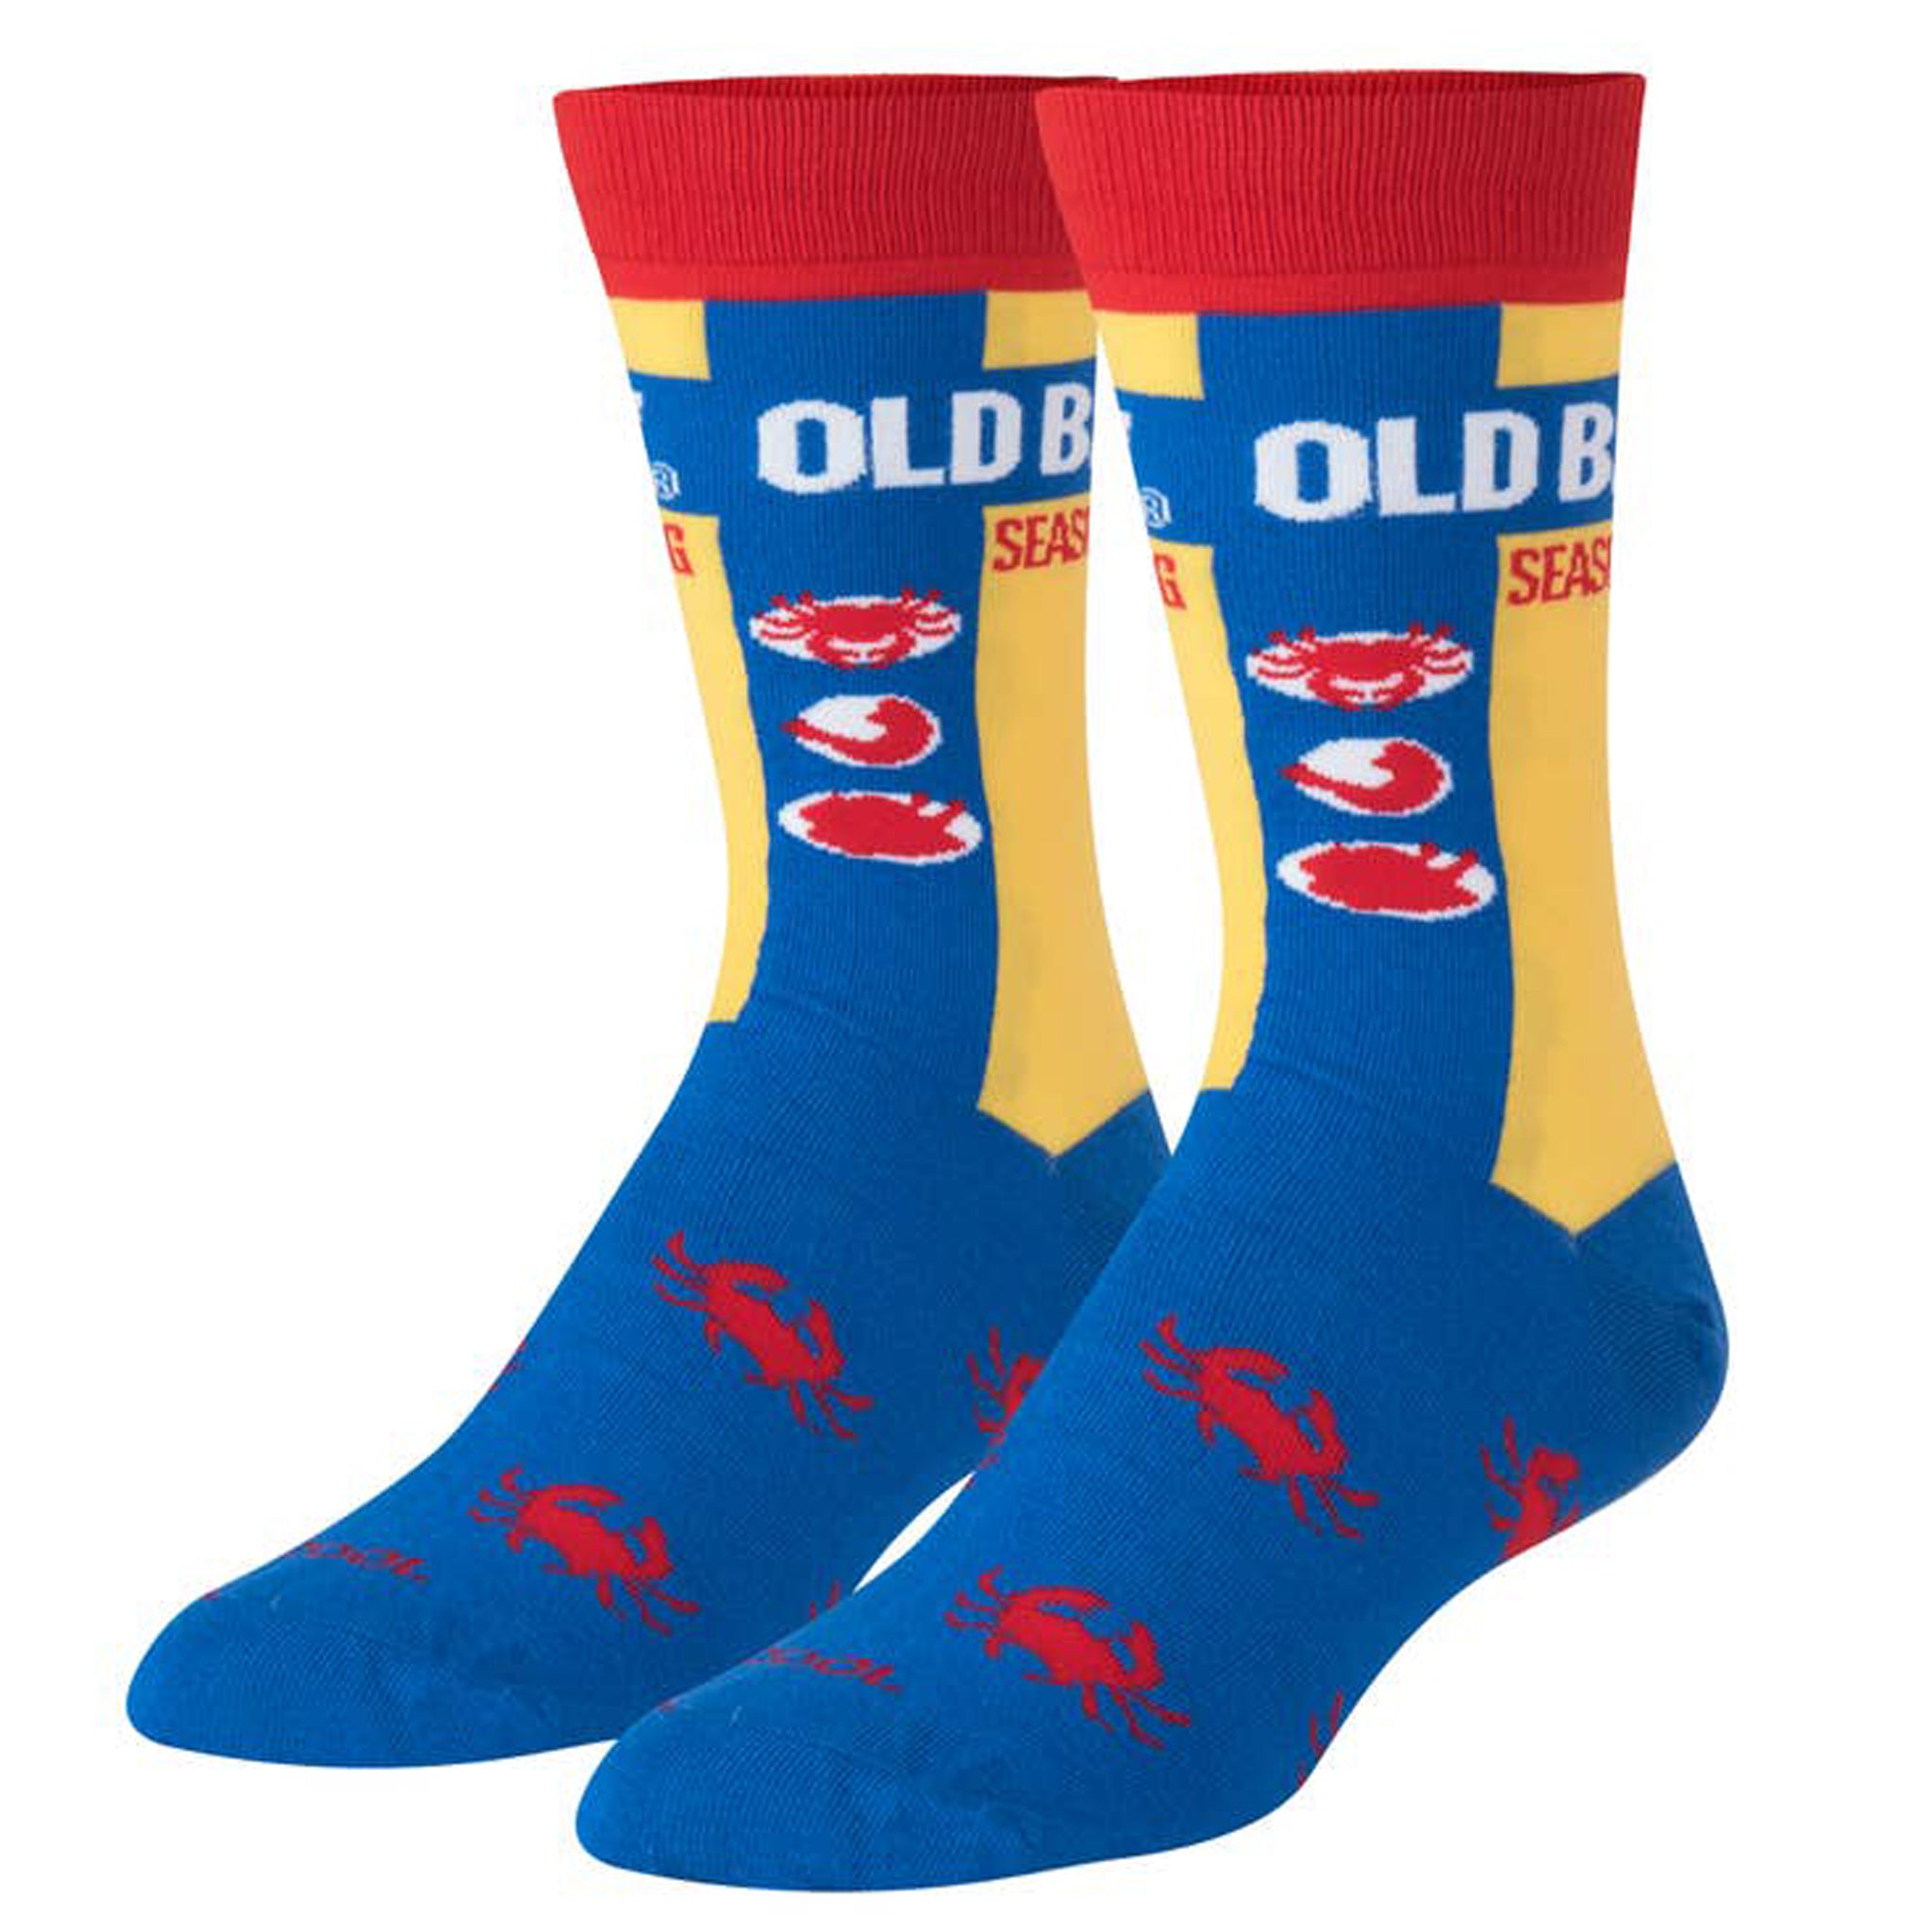 old red socks